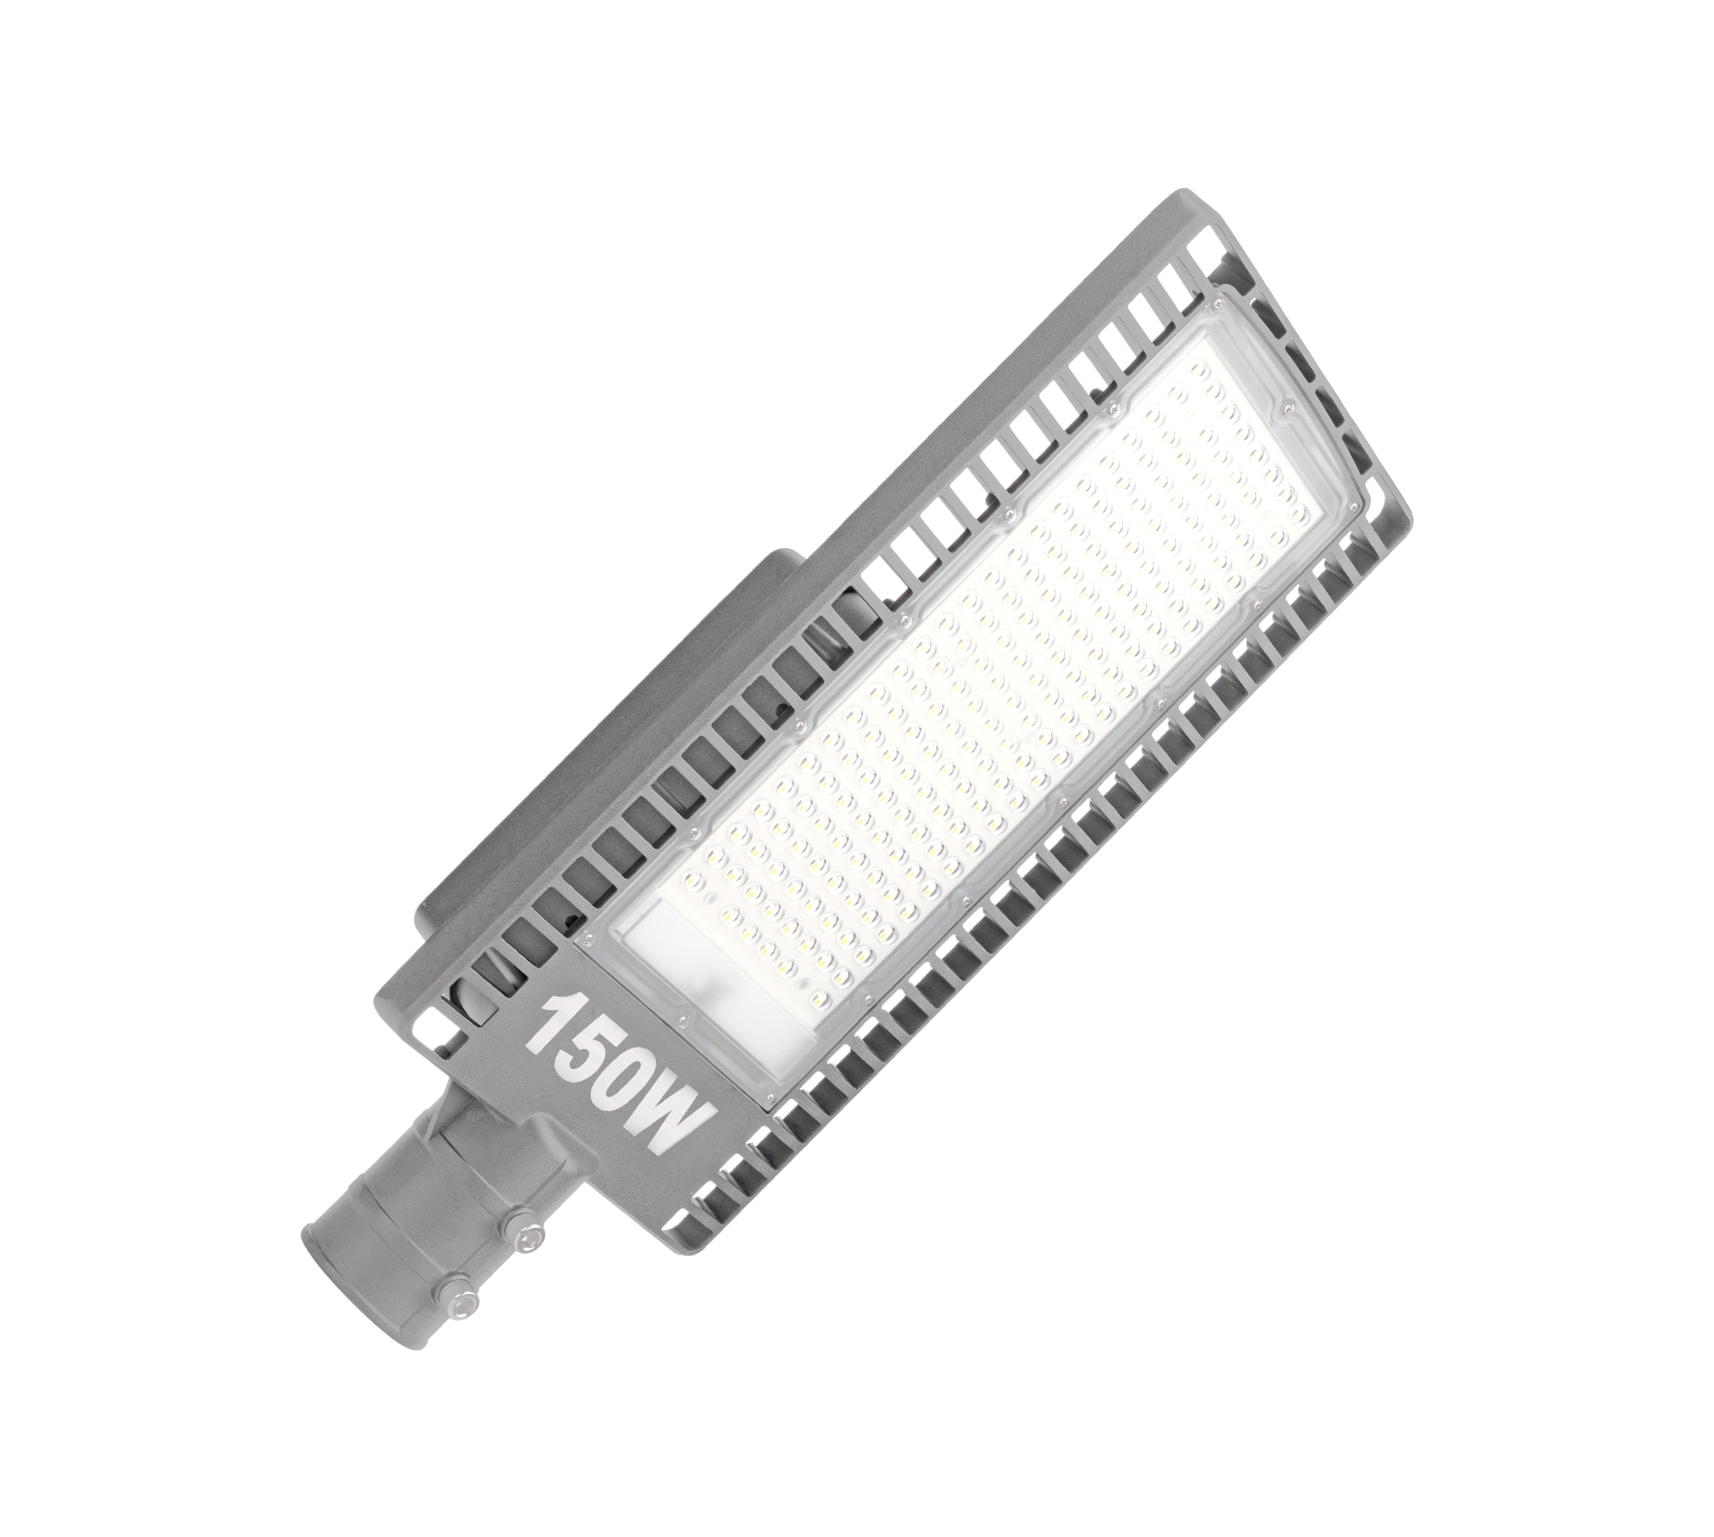 GL421-LED-150-50-3C <span>(caixa)</span><br/>